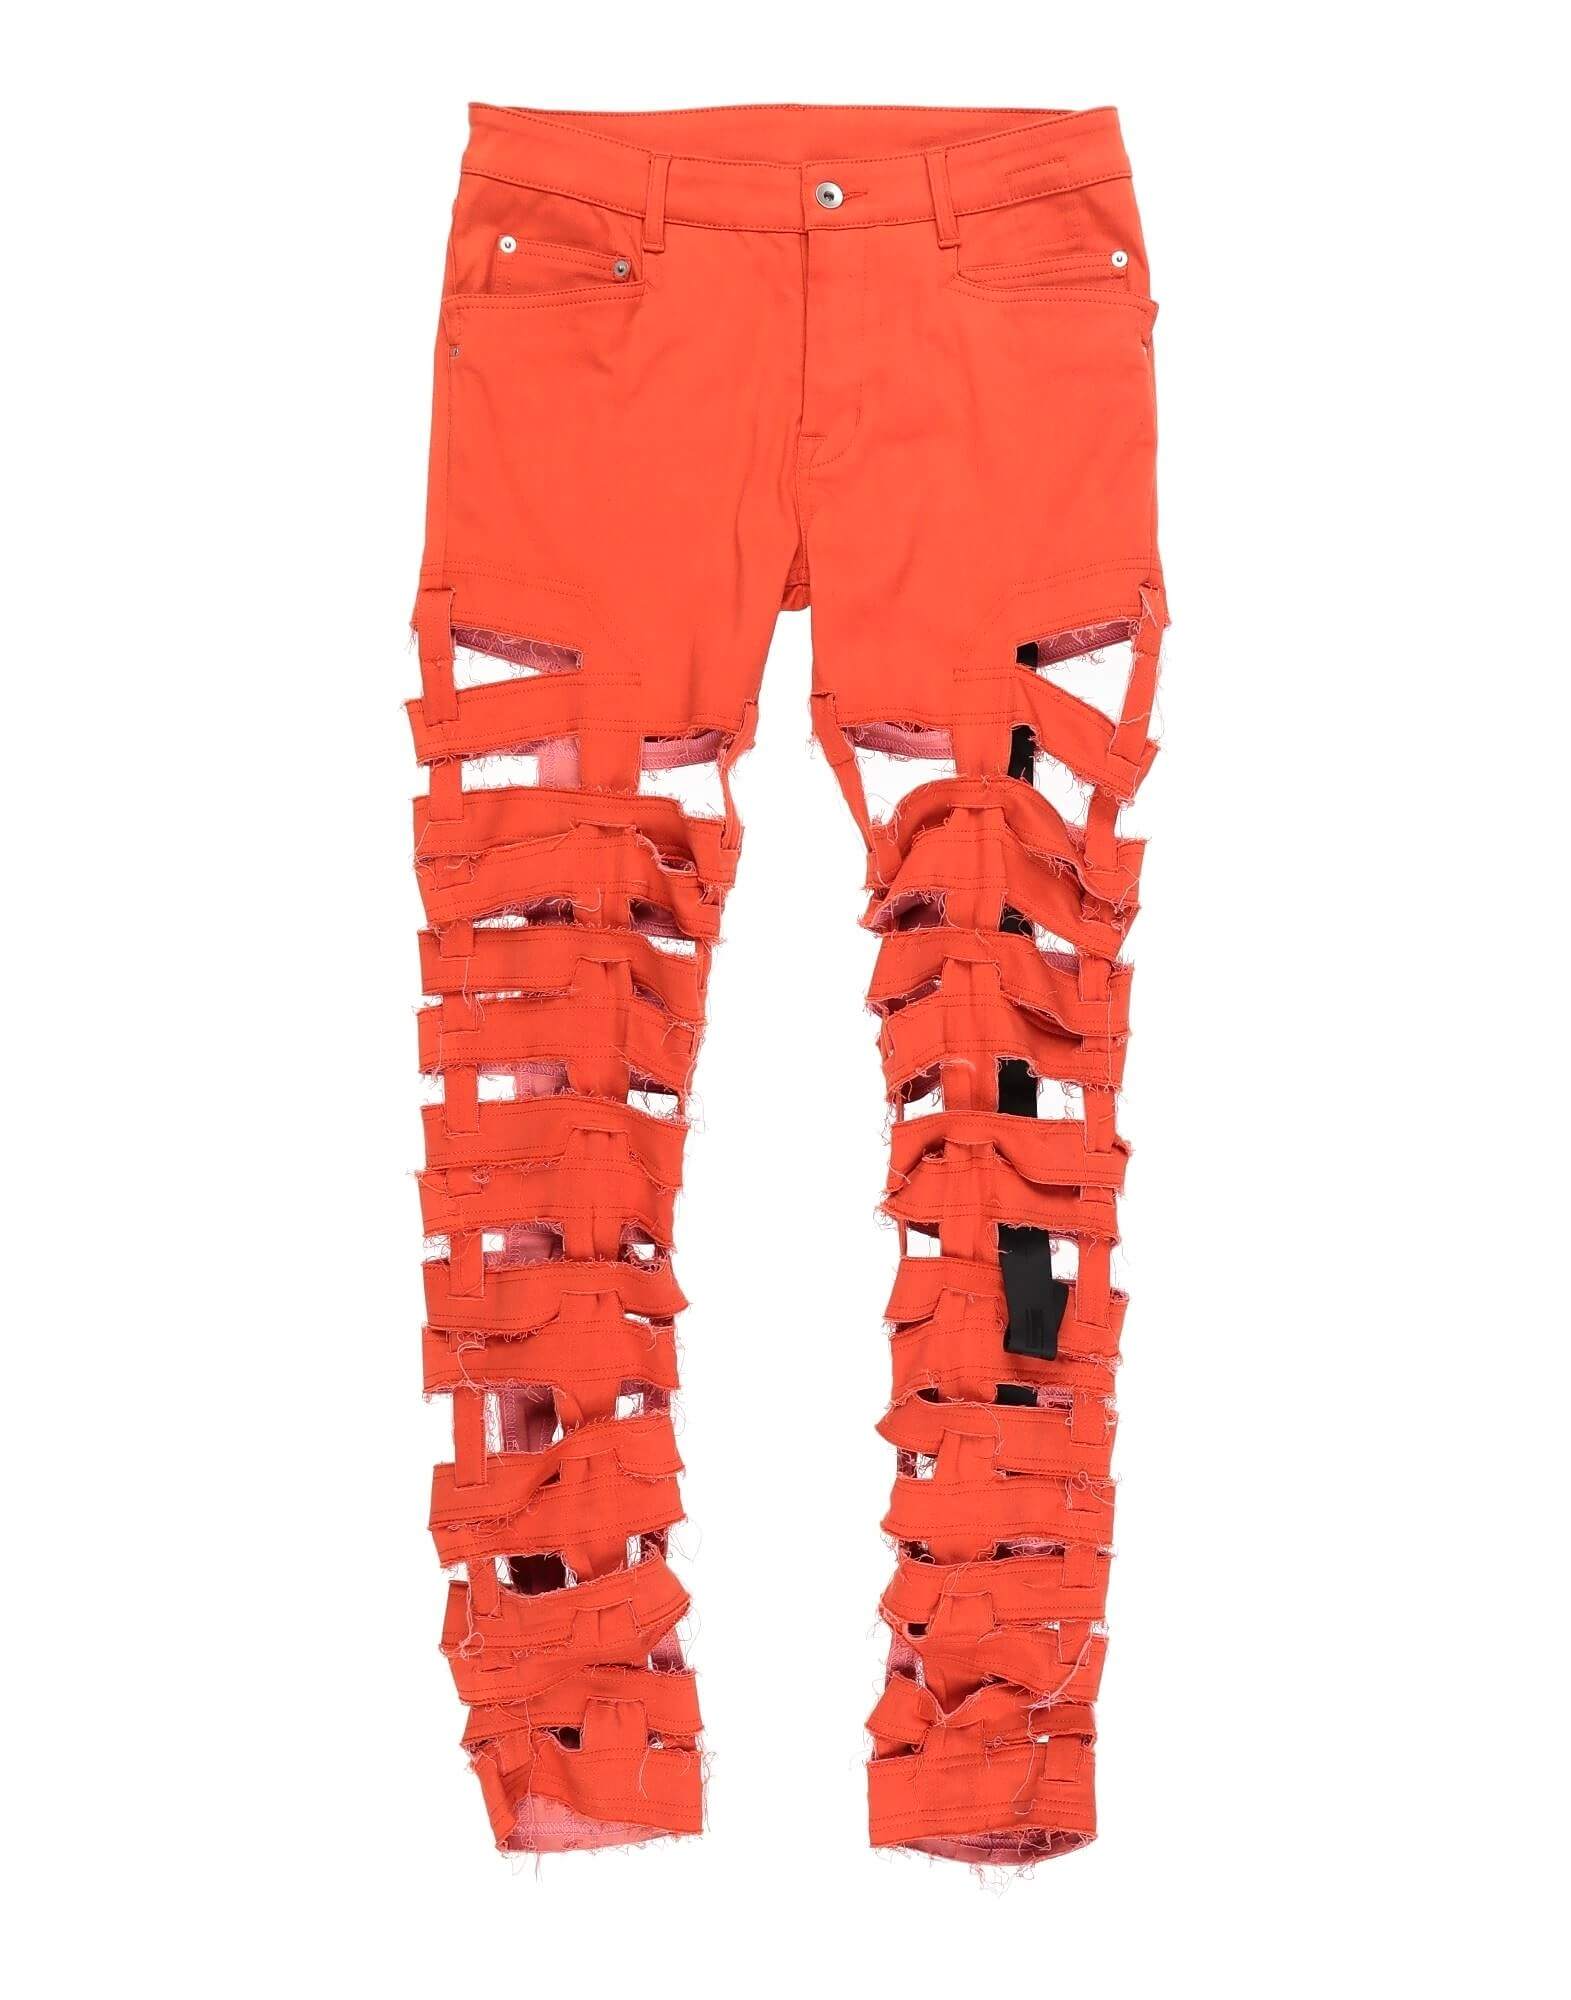 Джинсы DRKSHDW by Rick Owens, оранжевый джинсы зауженные whitney прилегающие заниженная посадка стрейч размер 26 синий